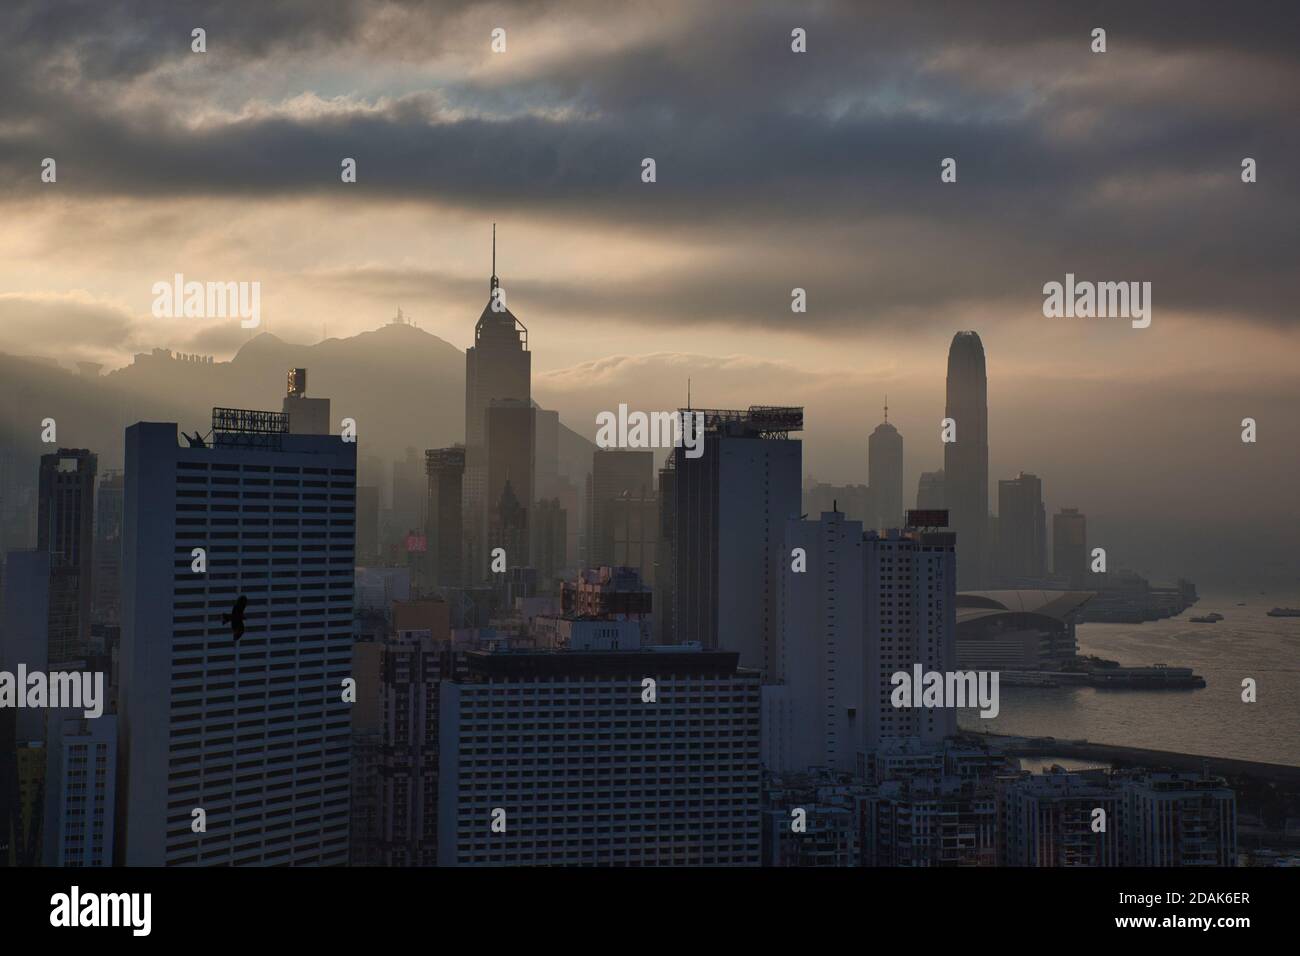 Der Central District von Hong Kong mit Hochhäusern am späten Nachmittag gesehen bewölkt, stimmungsvolle Licht, Hong Kong Island, China. Stockfoto